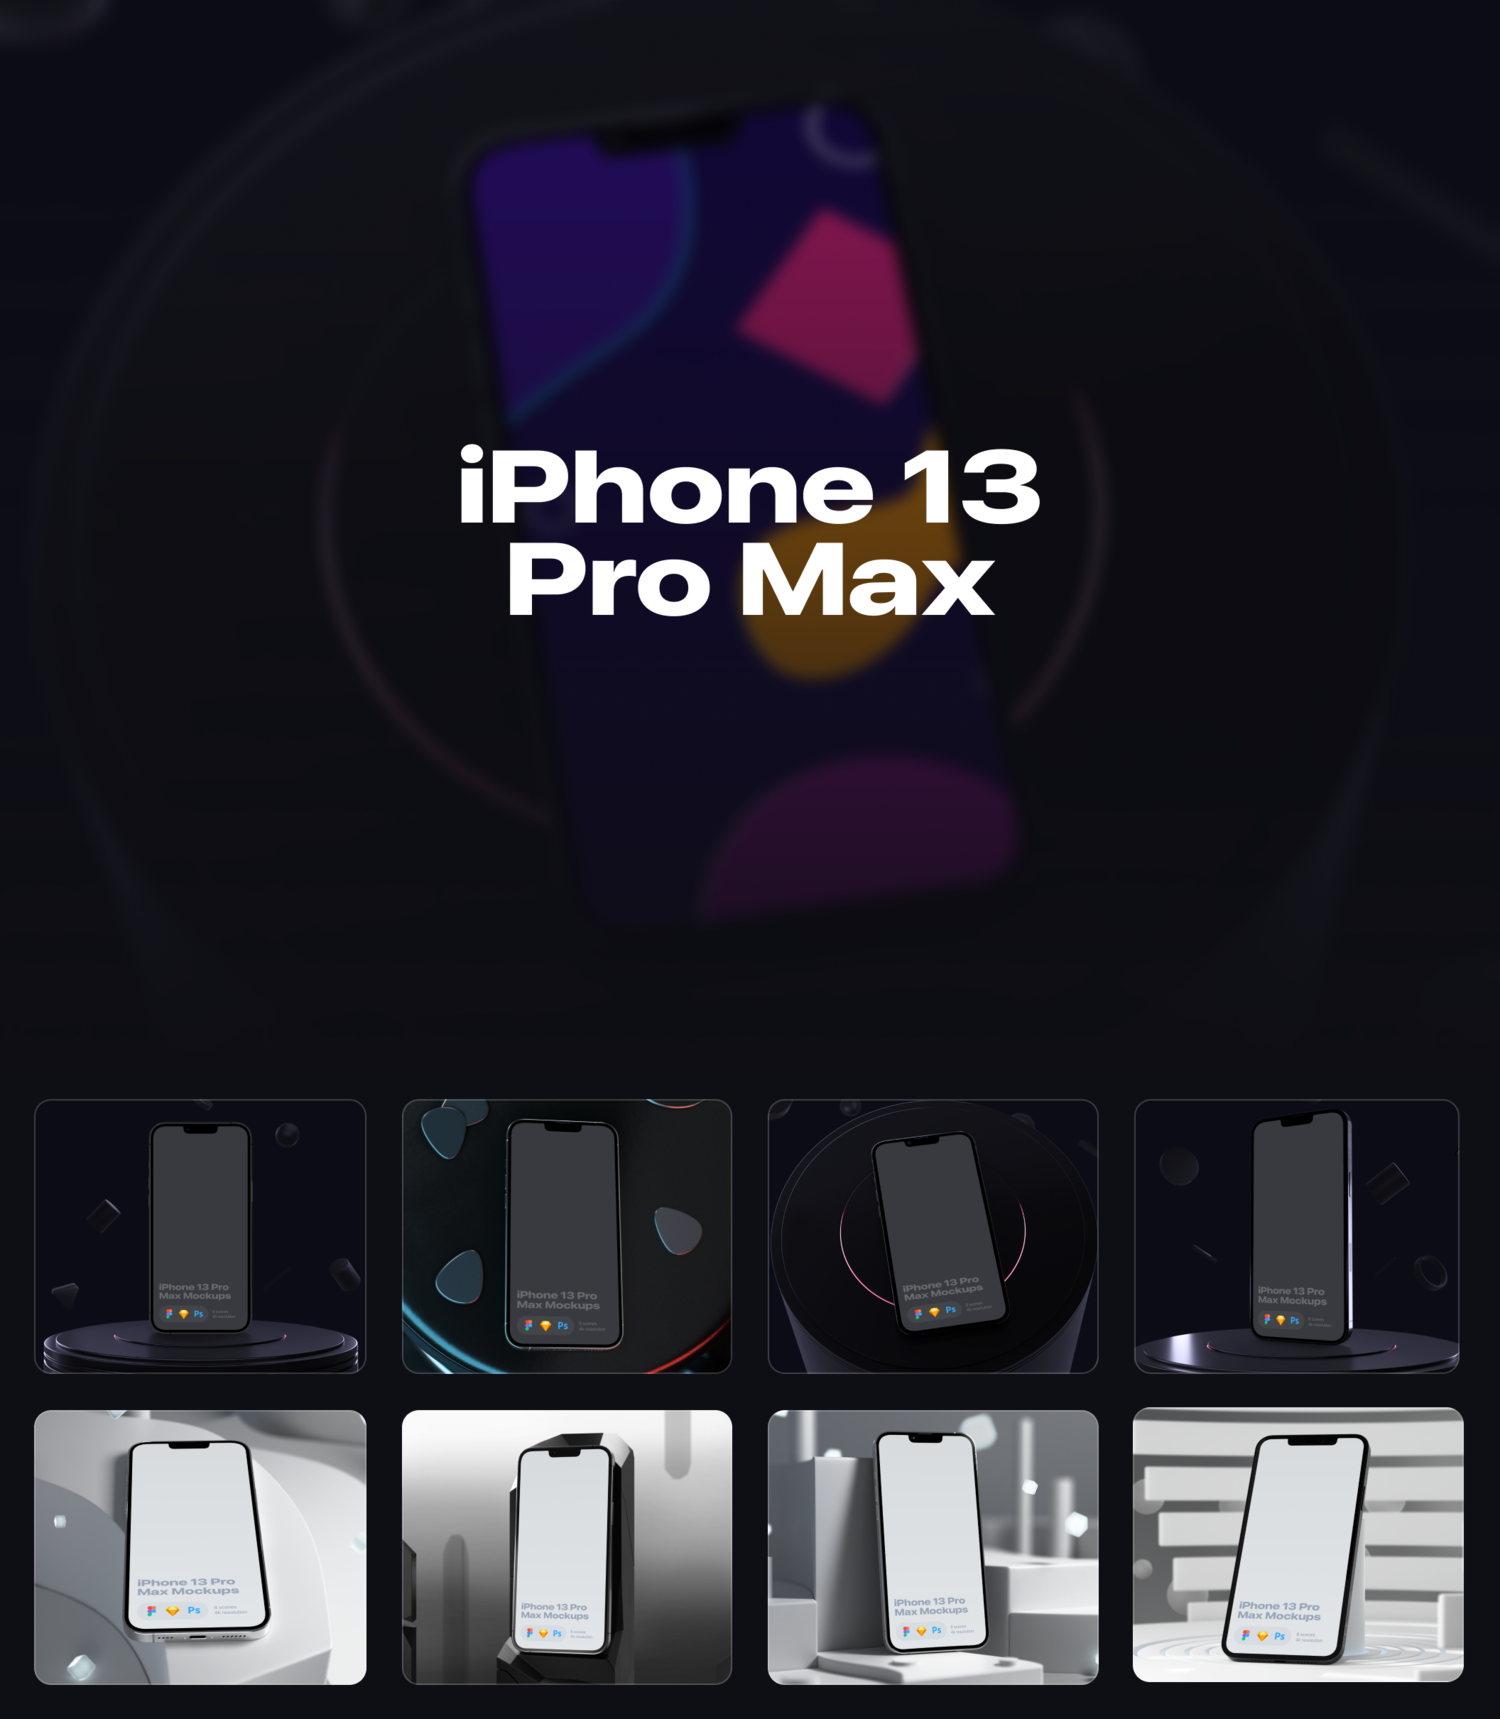 4609 8款高级质感苹果iPhone 13 Pro Max手机屏幕演示样机模板 8 Custom mockups@GOOODME.COM